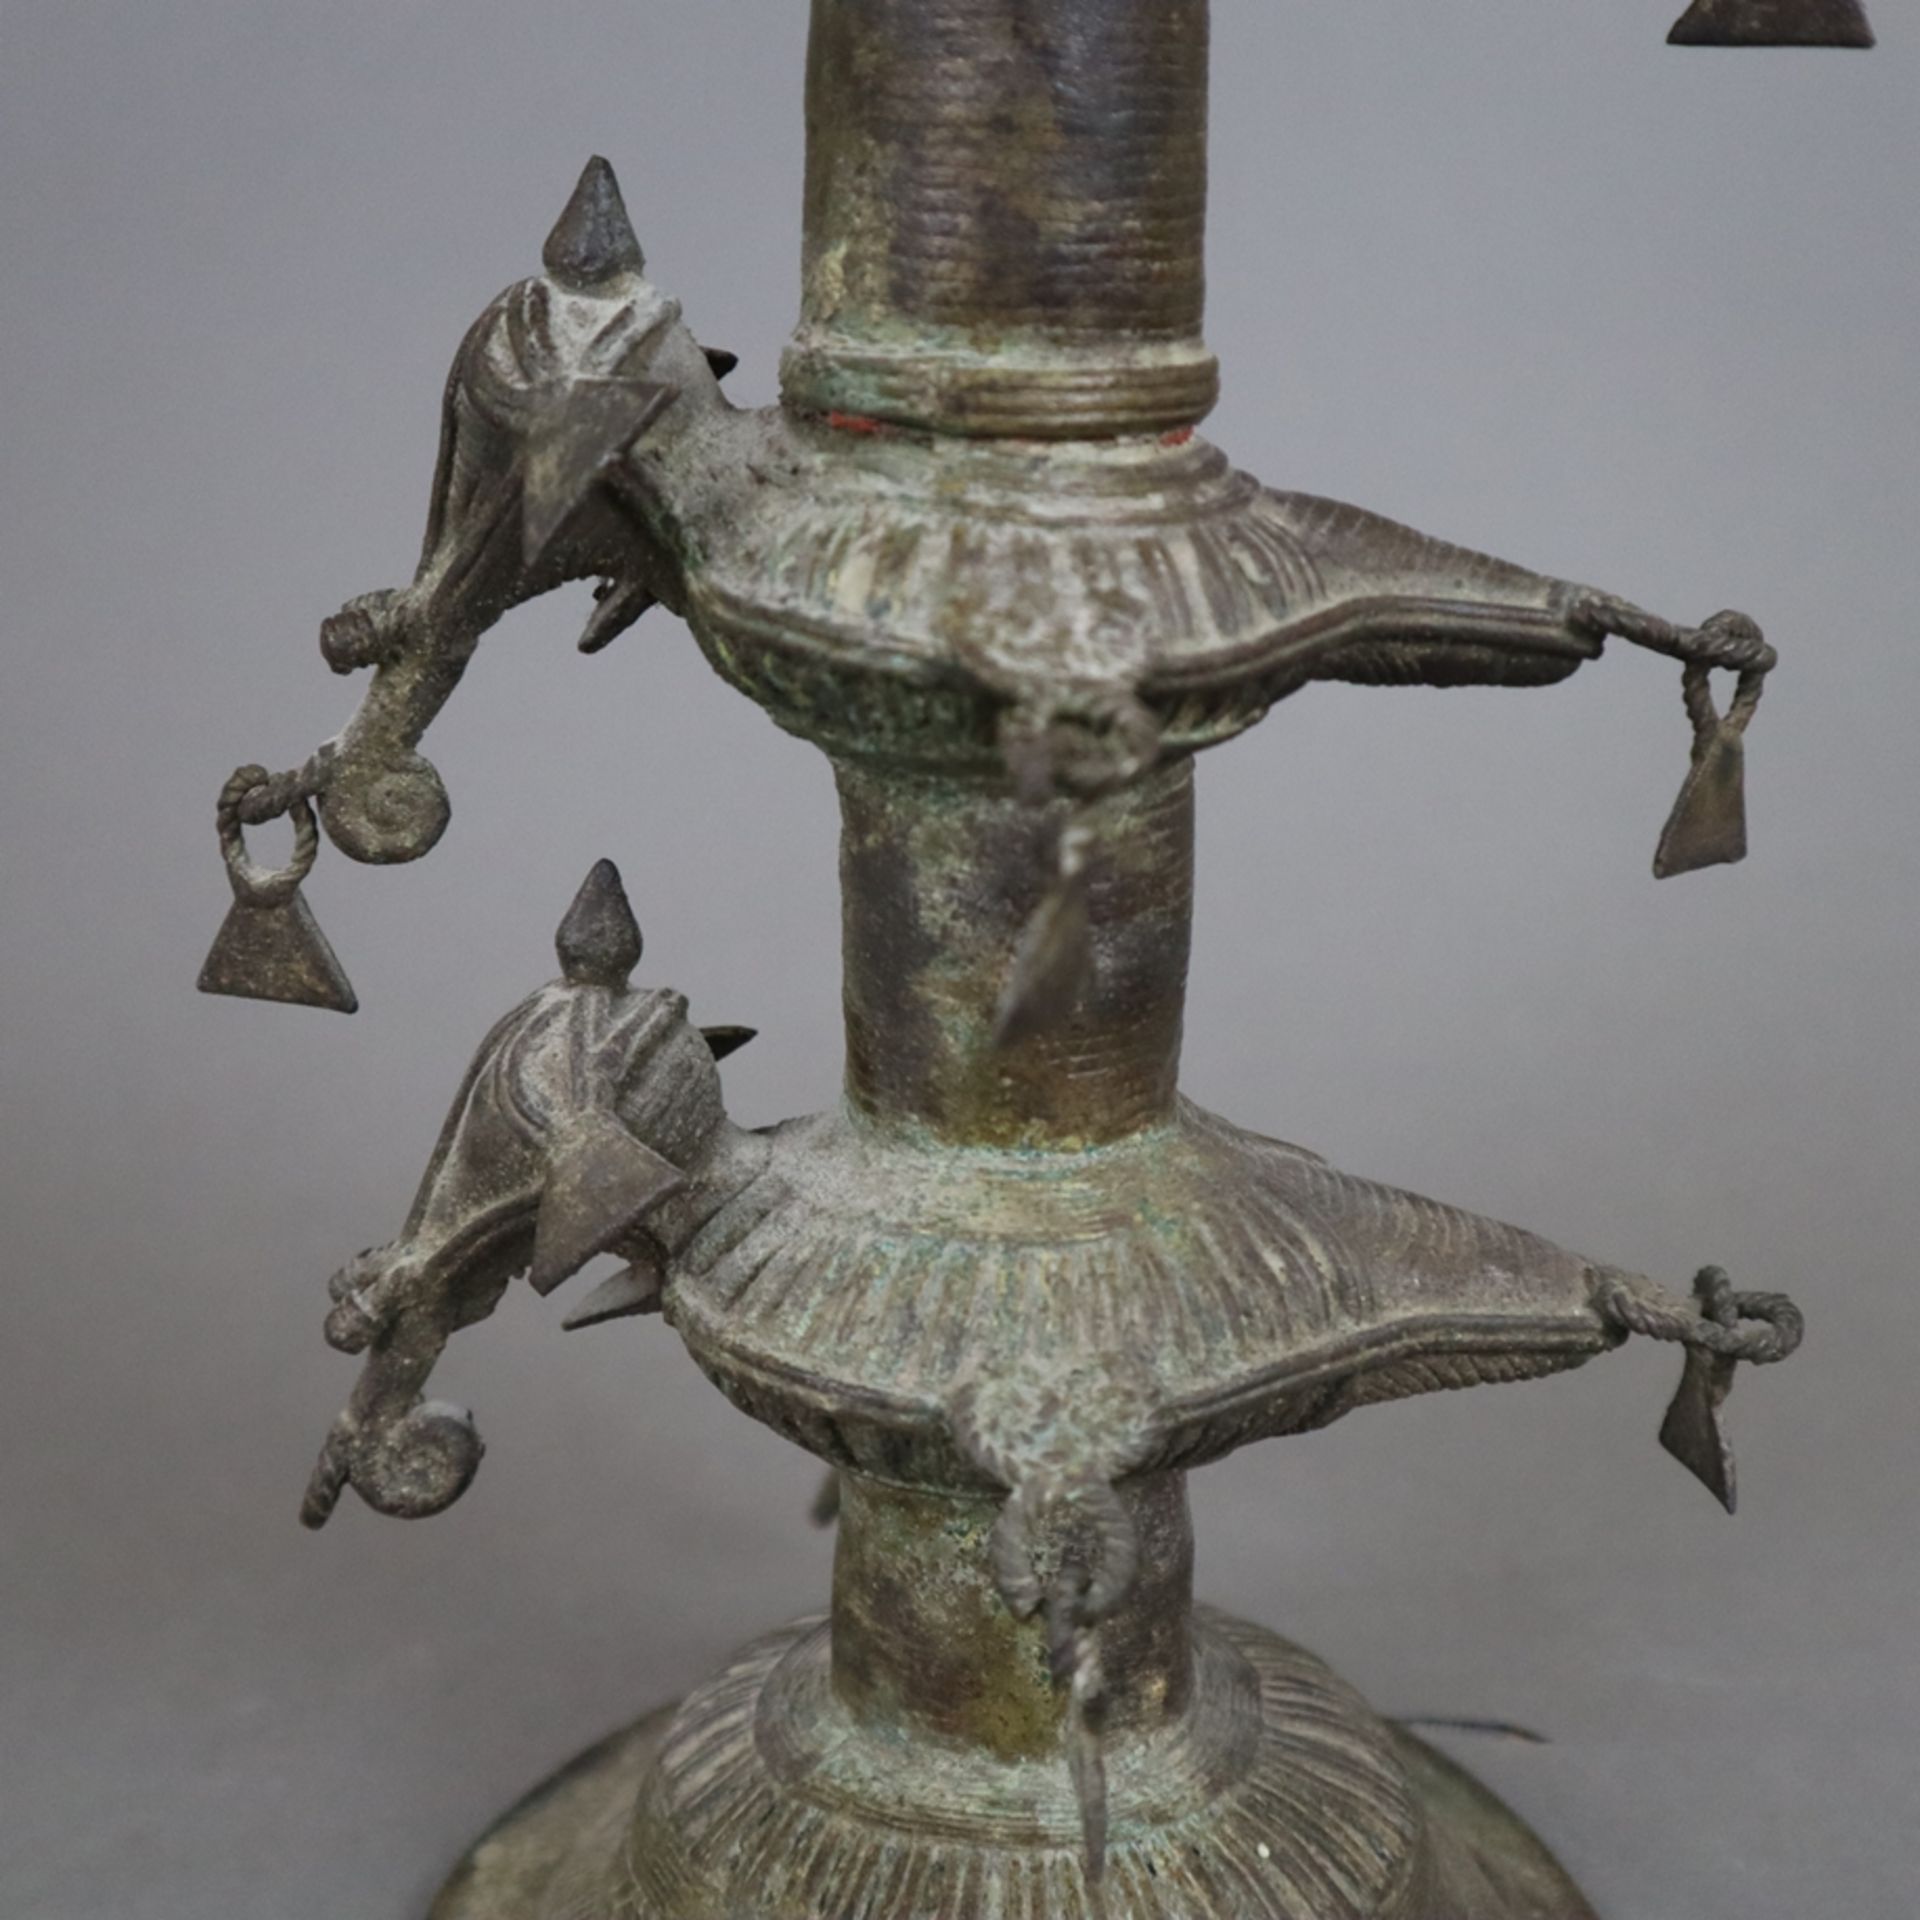 Hohe Öllampe - Indien, Bastar-Region, Bronze mit Alterspatina, über gewölbtem Fuß gegliederter Scha - Bild 8 aus 9